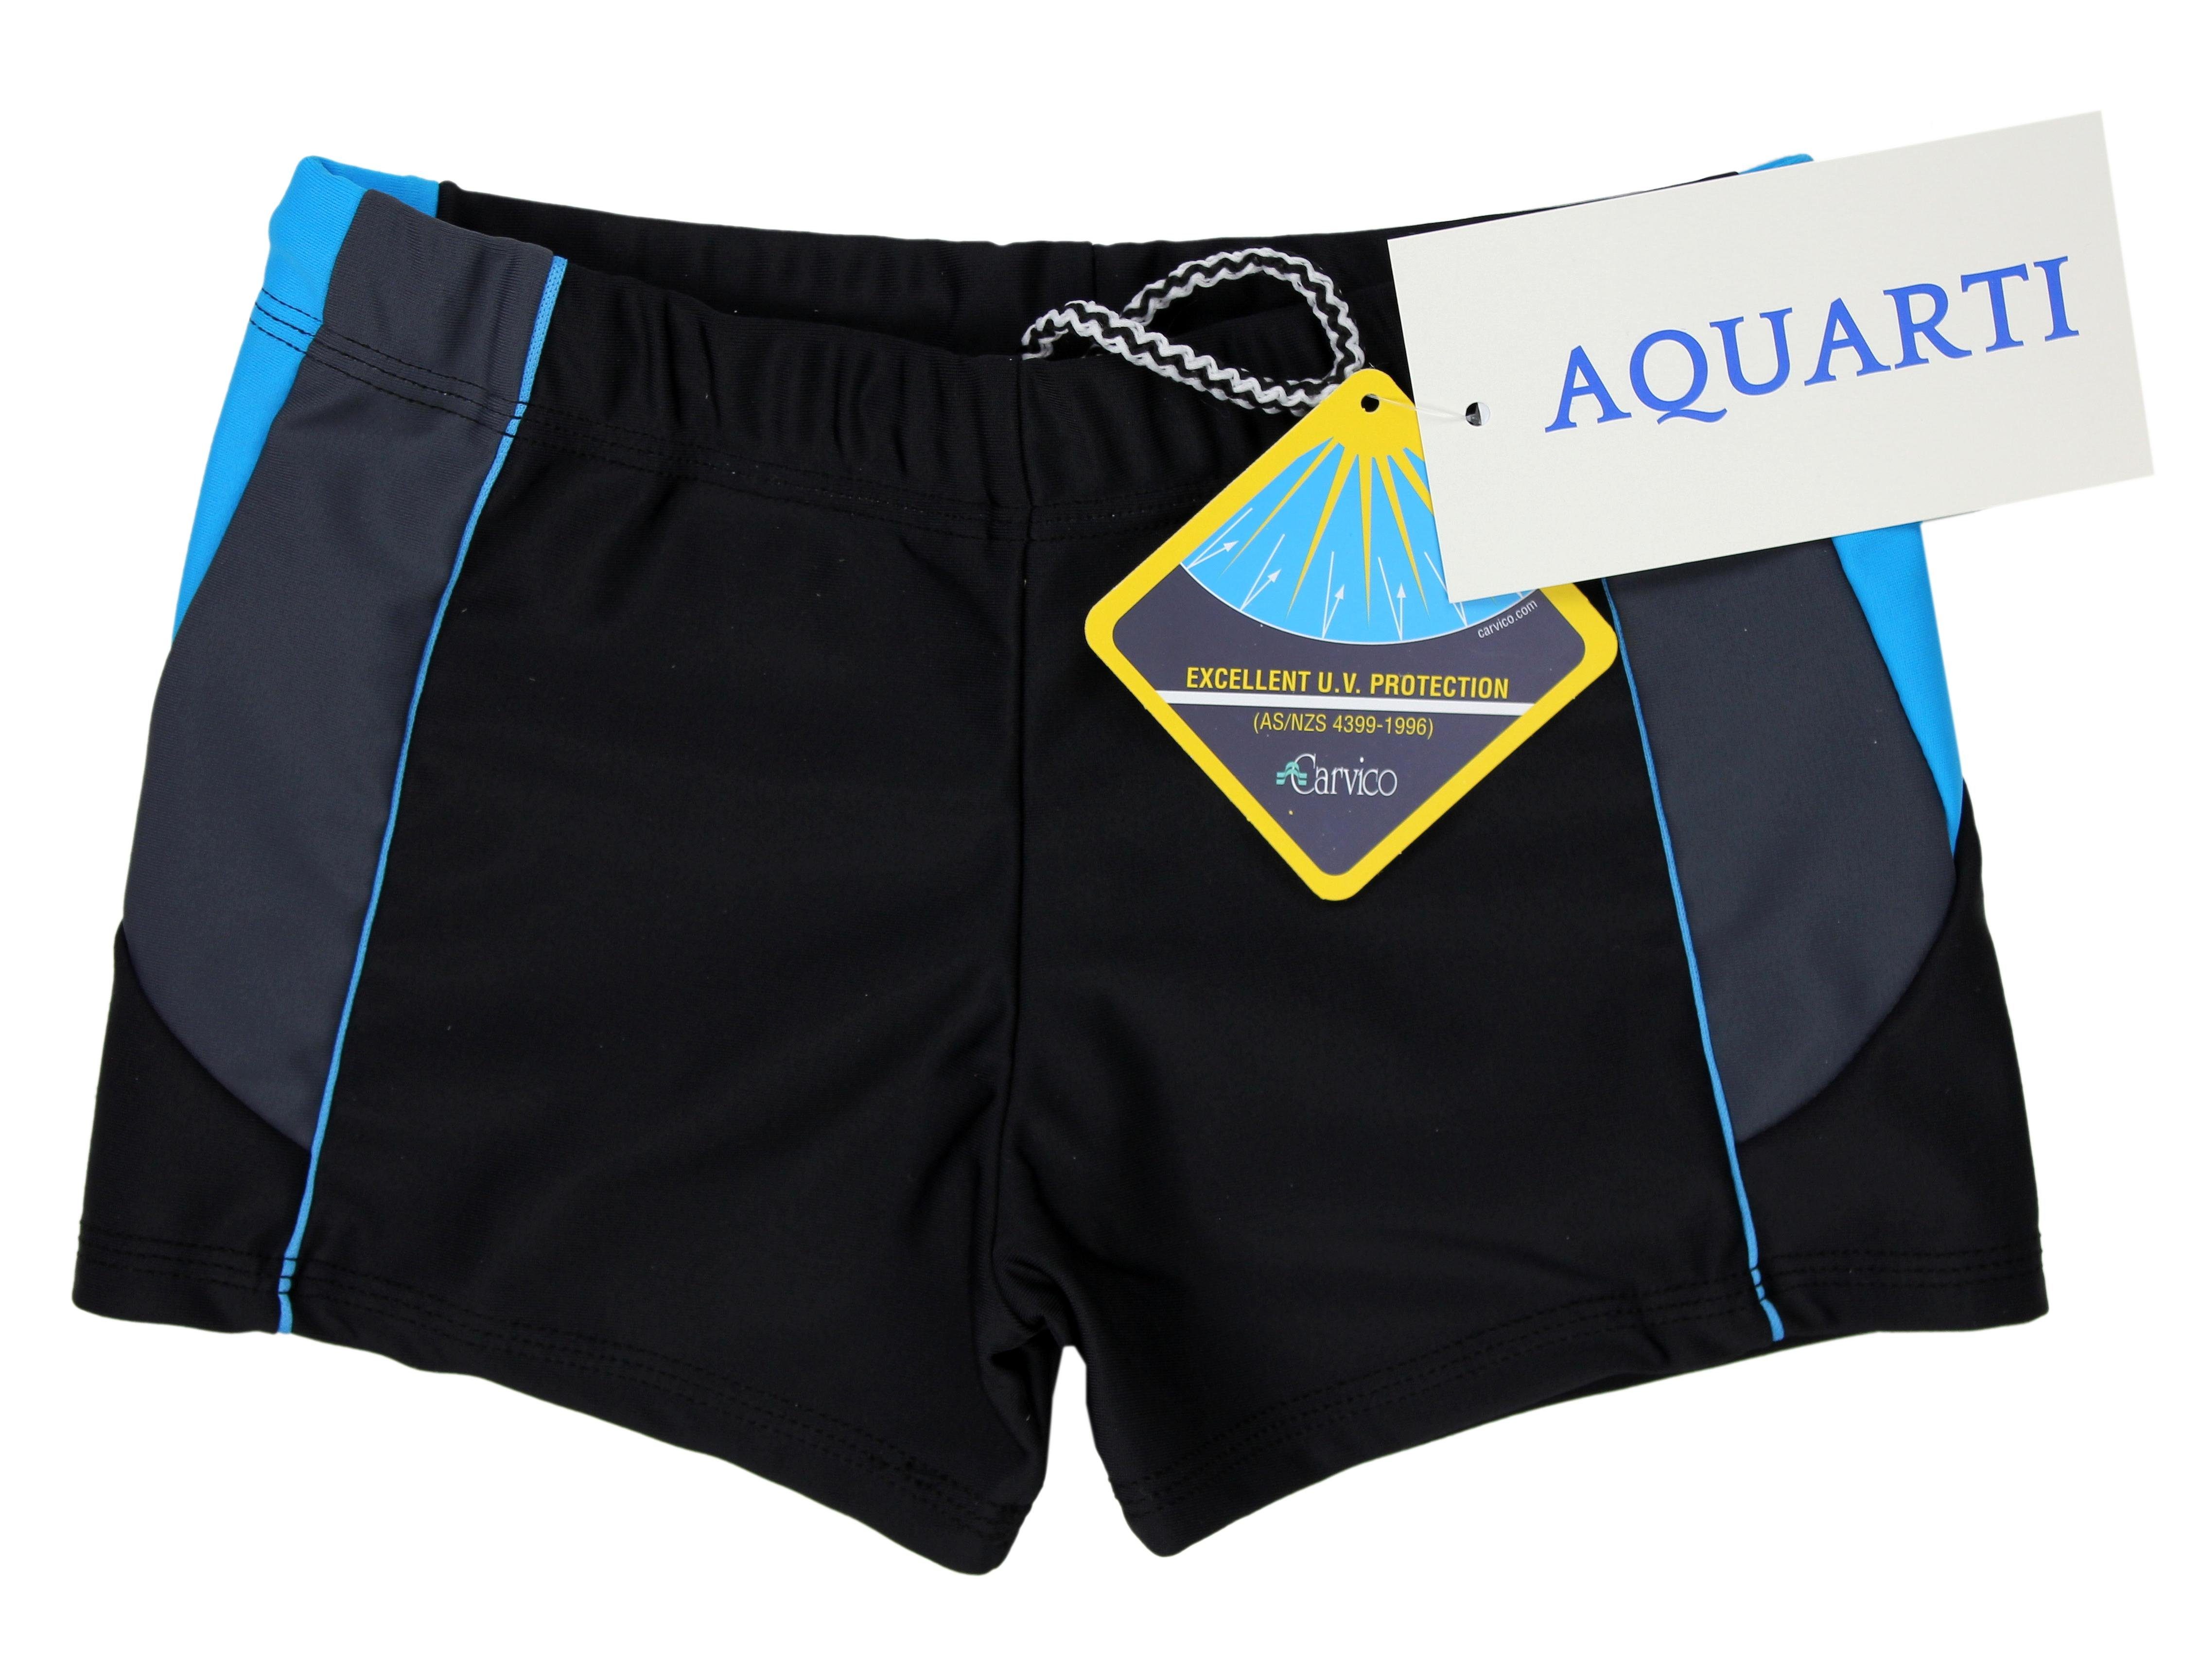 Aquarti Badehose Schwarz/Graphit/Blau mit Seitlich Aquarti Jungen Badehose Kurze Einsätzen